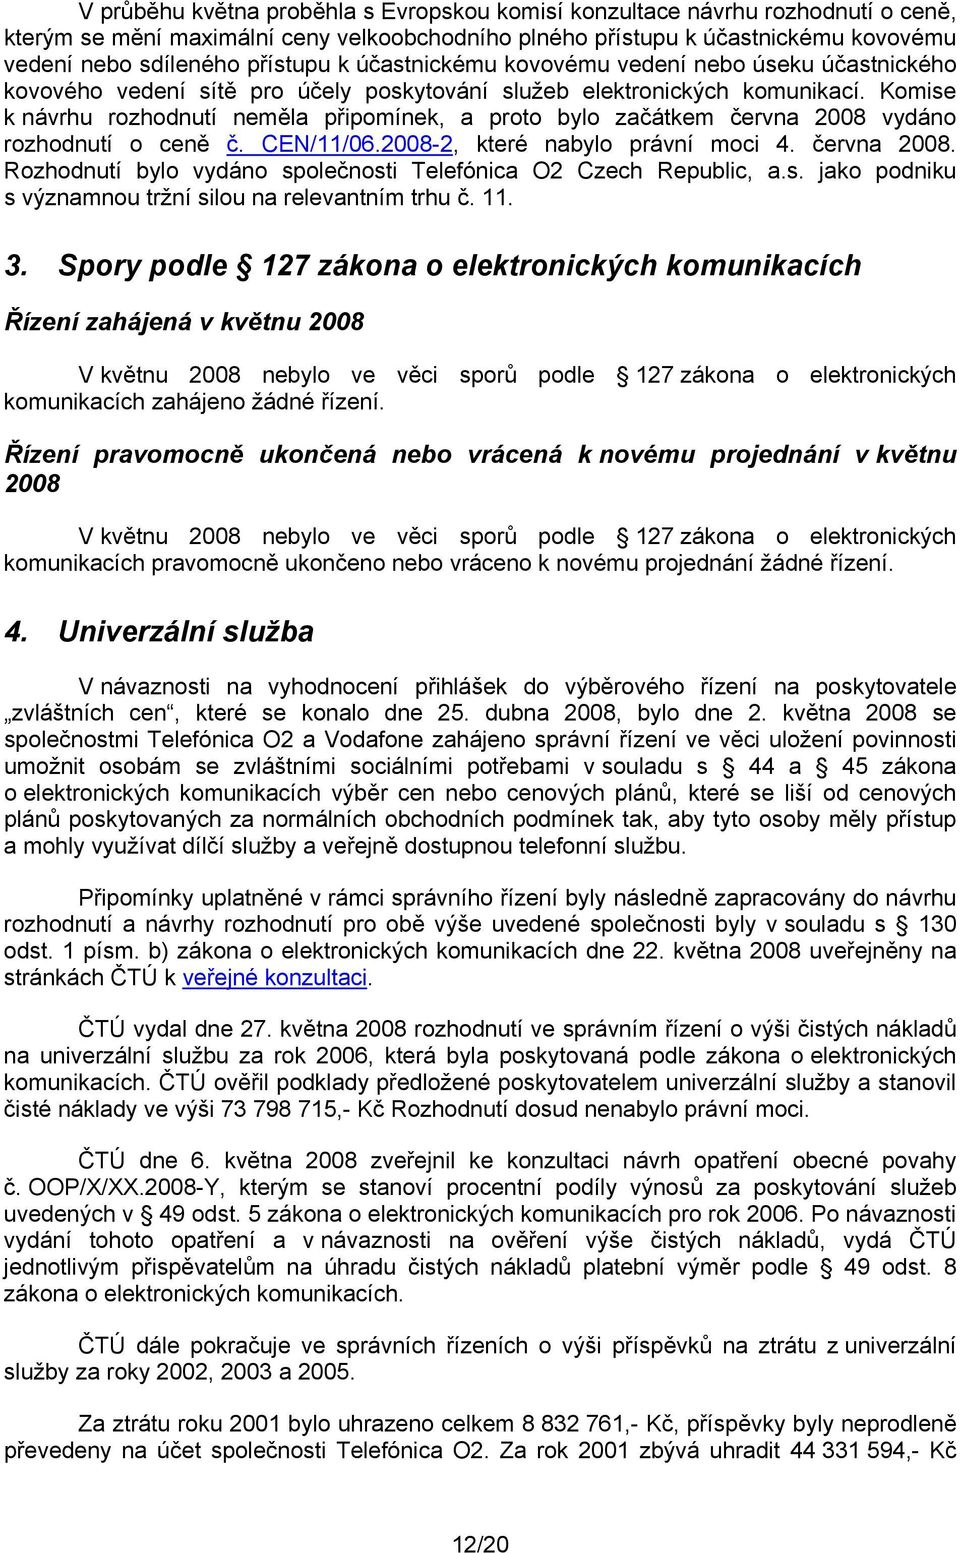 Komise k návrhu rozhodnutí neměla připomínek, a proto bylo začátkem června 2008 vydáno rozhodnutí o ceně č. CEN/11/06.2008-2, které nabylo právní moci 4. června 2008. Rozhodnutí bylo vydáno společnosti Telefónica O2 Czech Republic, a.